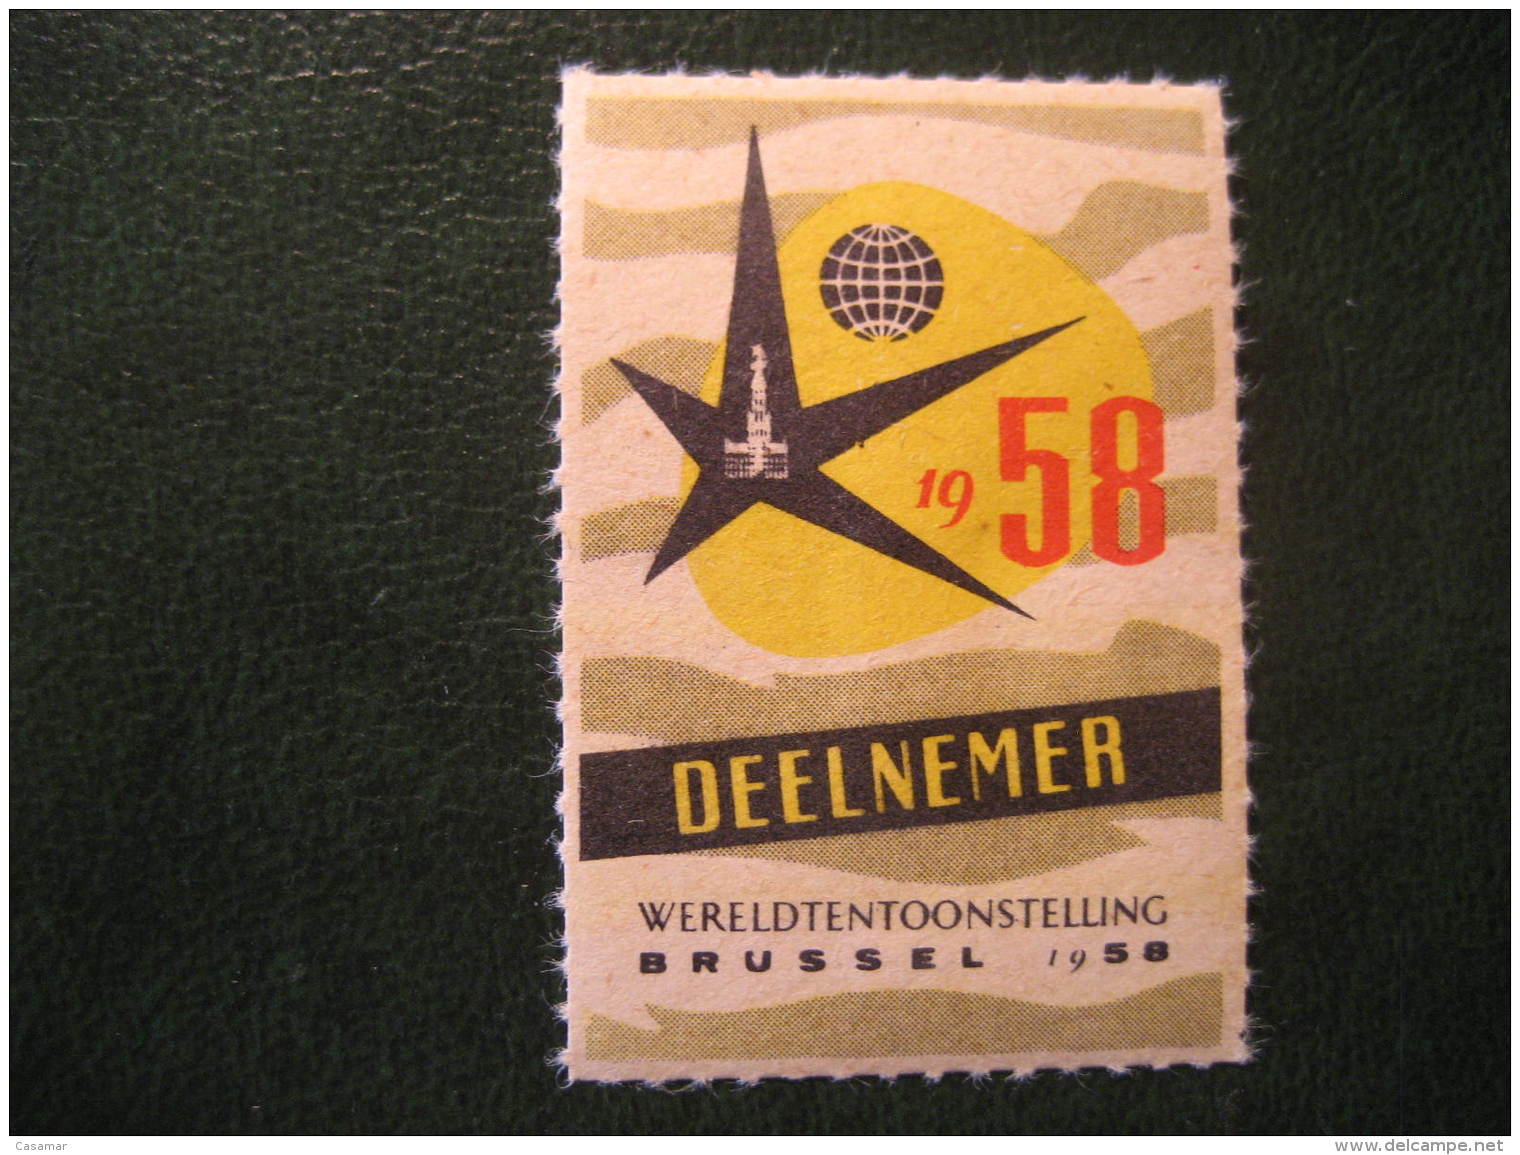 BRUXELLES Brussels 1958 Deelnemer Wereldtentoonstellung Universal Exhibition Poster Stamp Label Vignette Belgium - Erinnophilie [E]